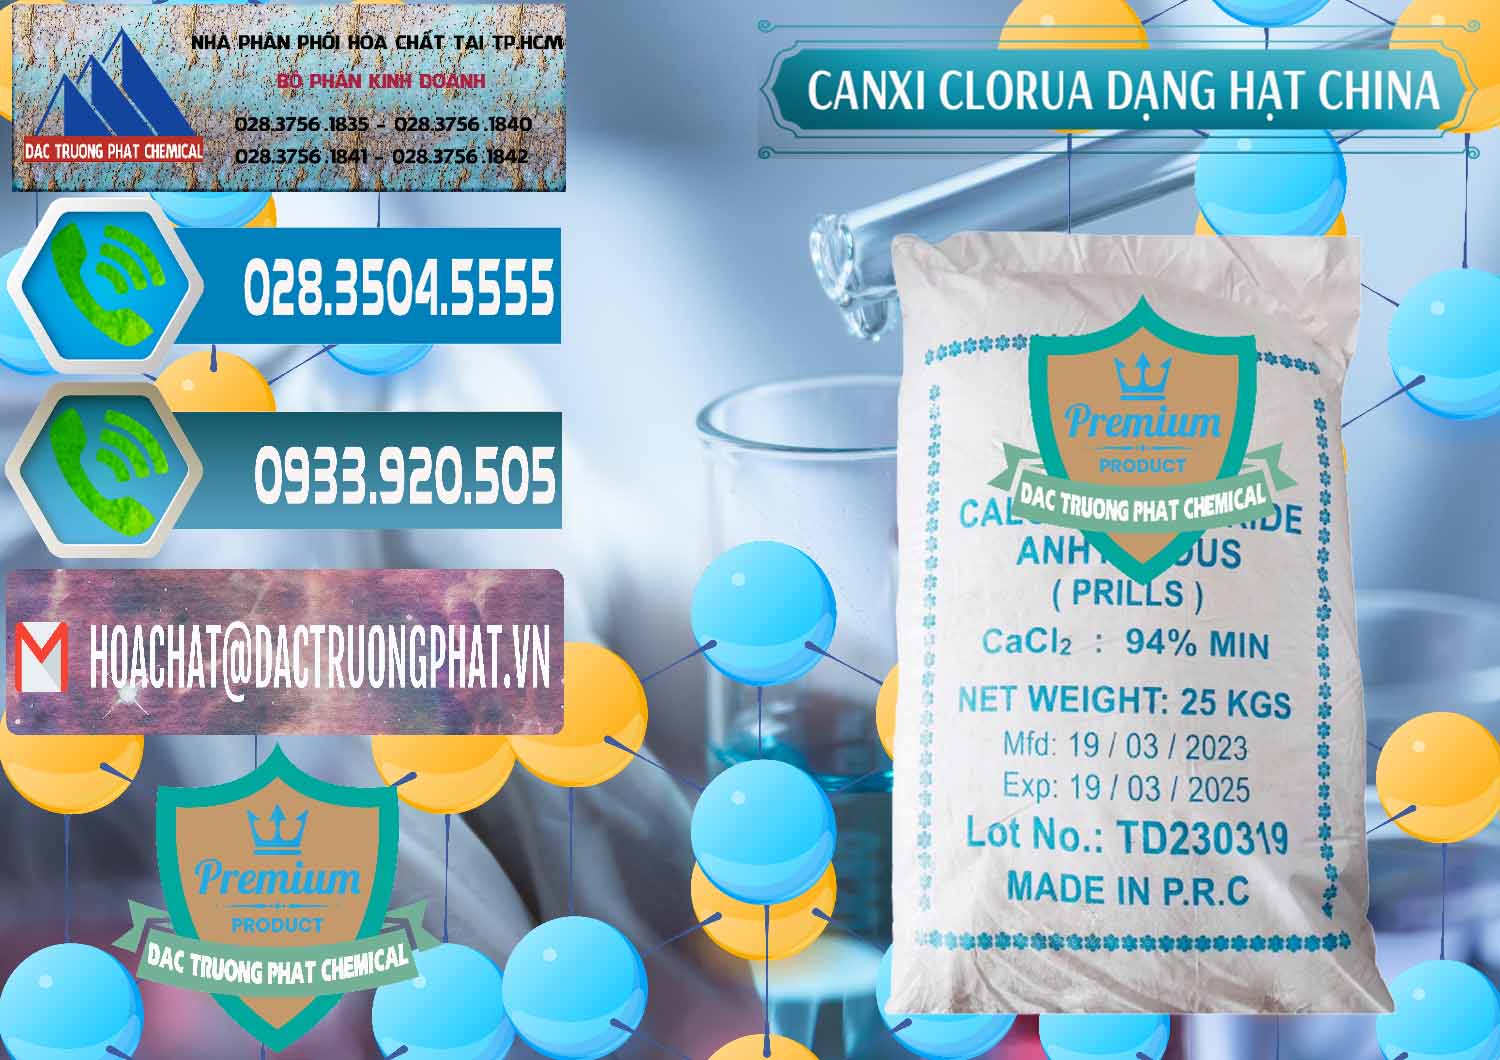 Bán và phân phối CaCl2 – Canxi Clorua 94% Dạng Hạt Trung Quốc China - 0373 - Cty cung cấp & nhập khẩu hóa chất tại TP.HCM - congtyhoachat.net